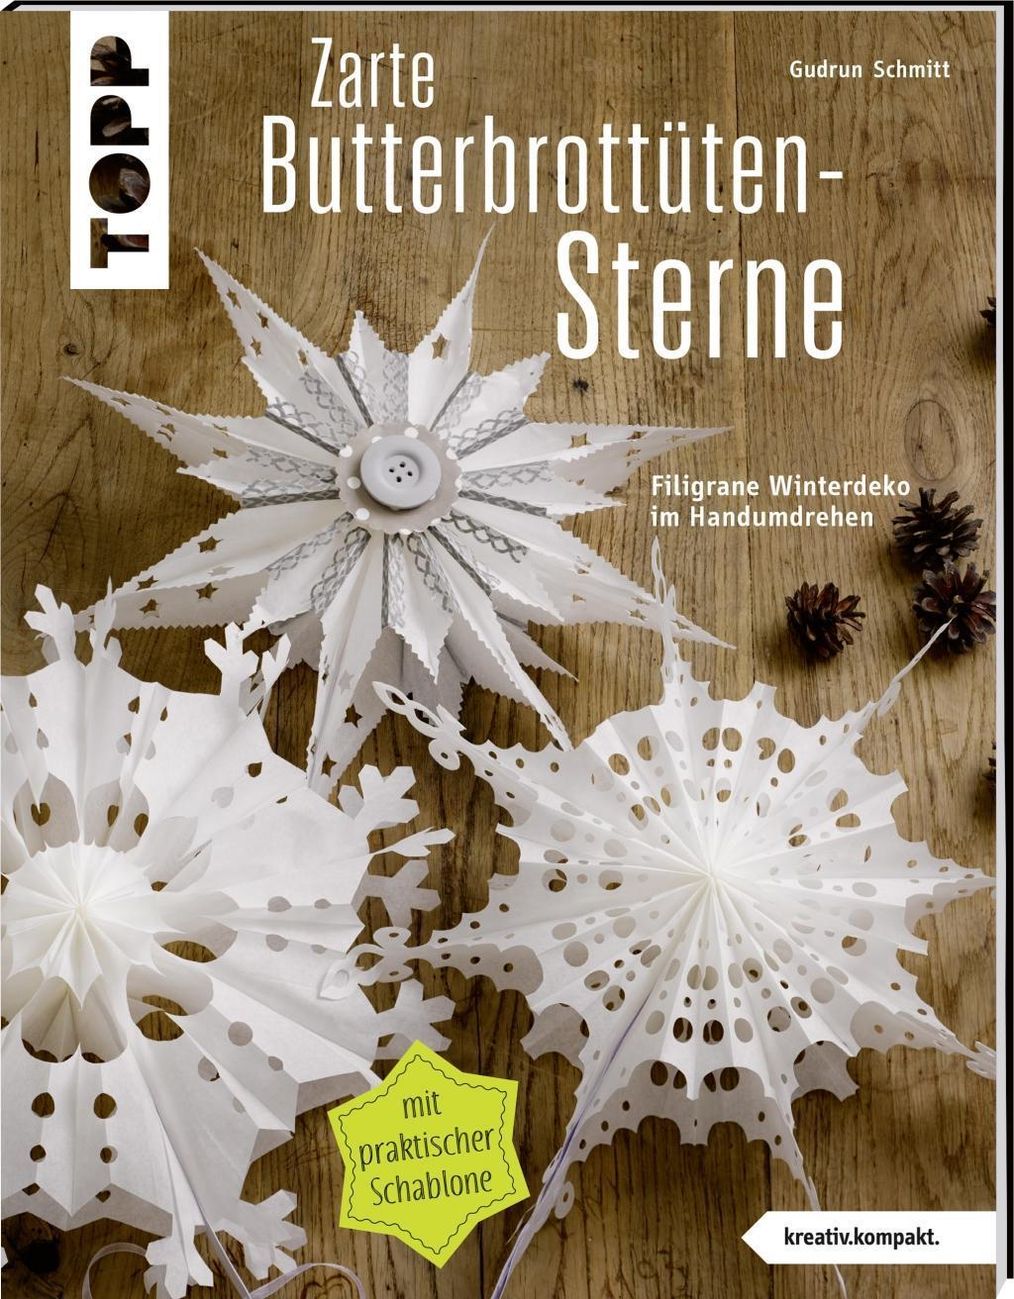 Zarte Butterbrottütensterne Buch versandkostenfrei bei Weltbild.at